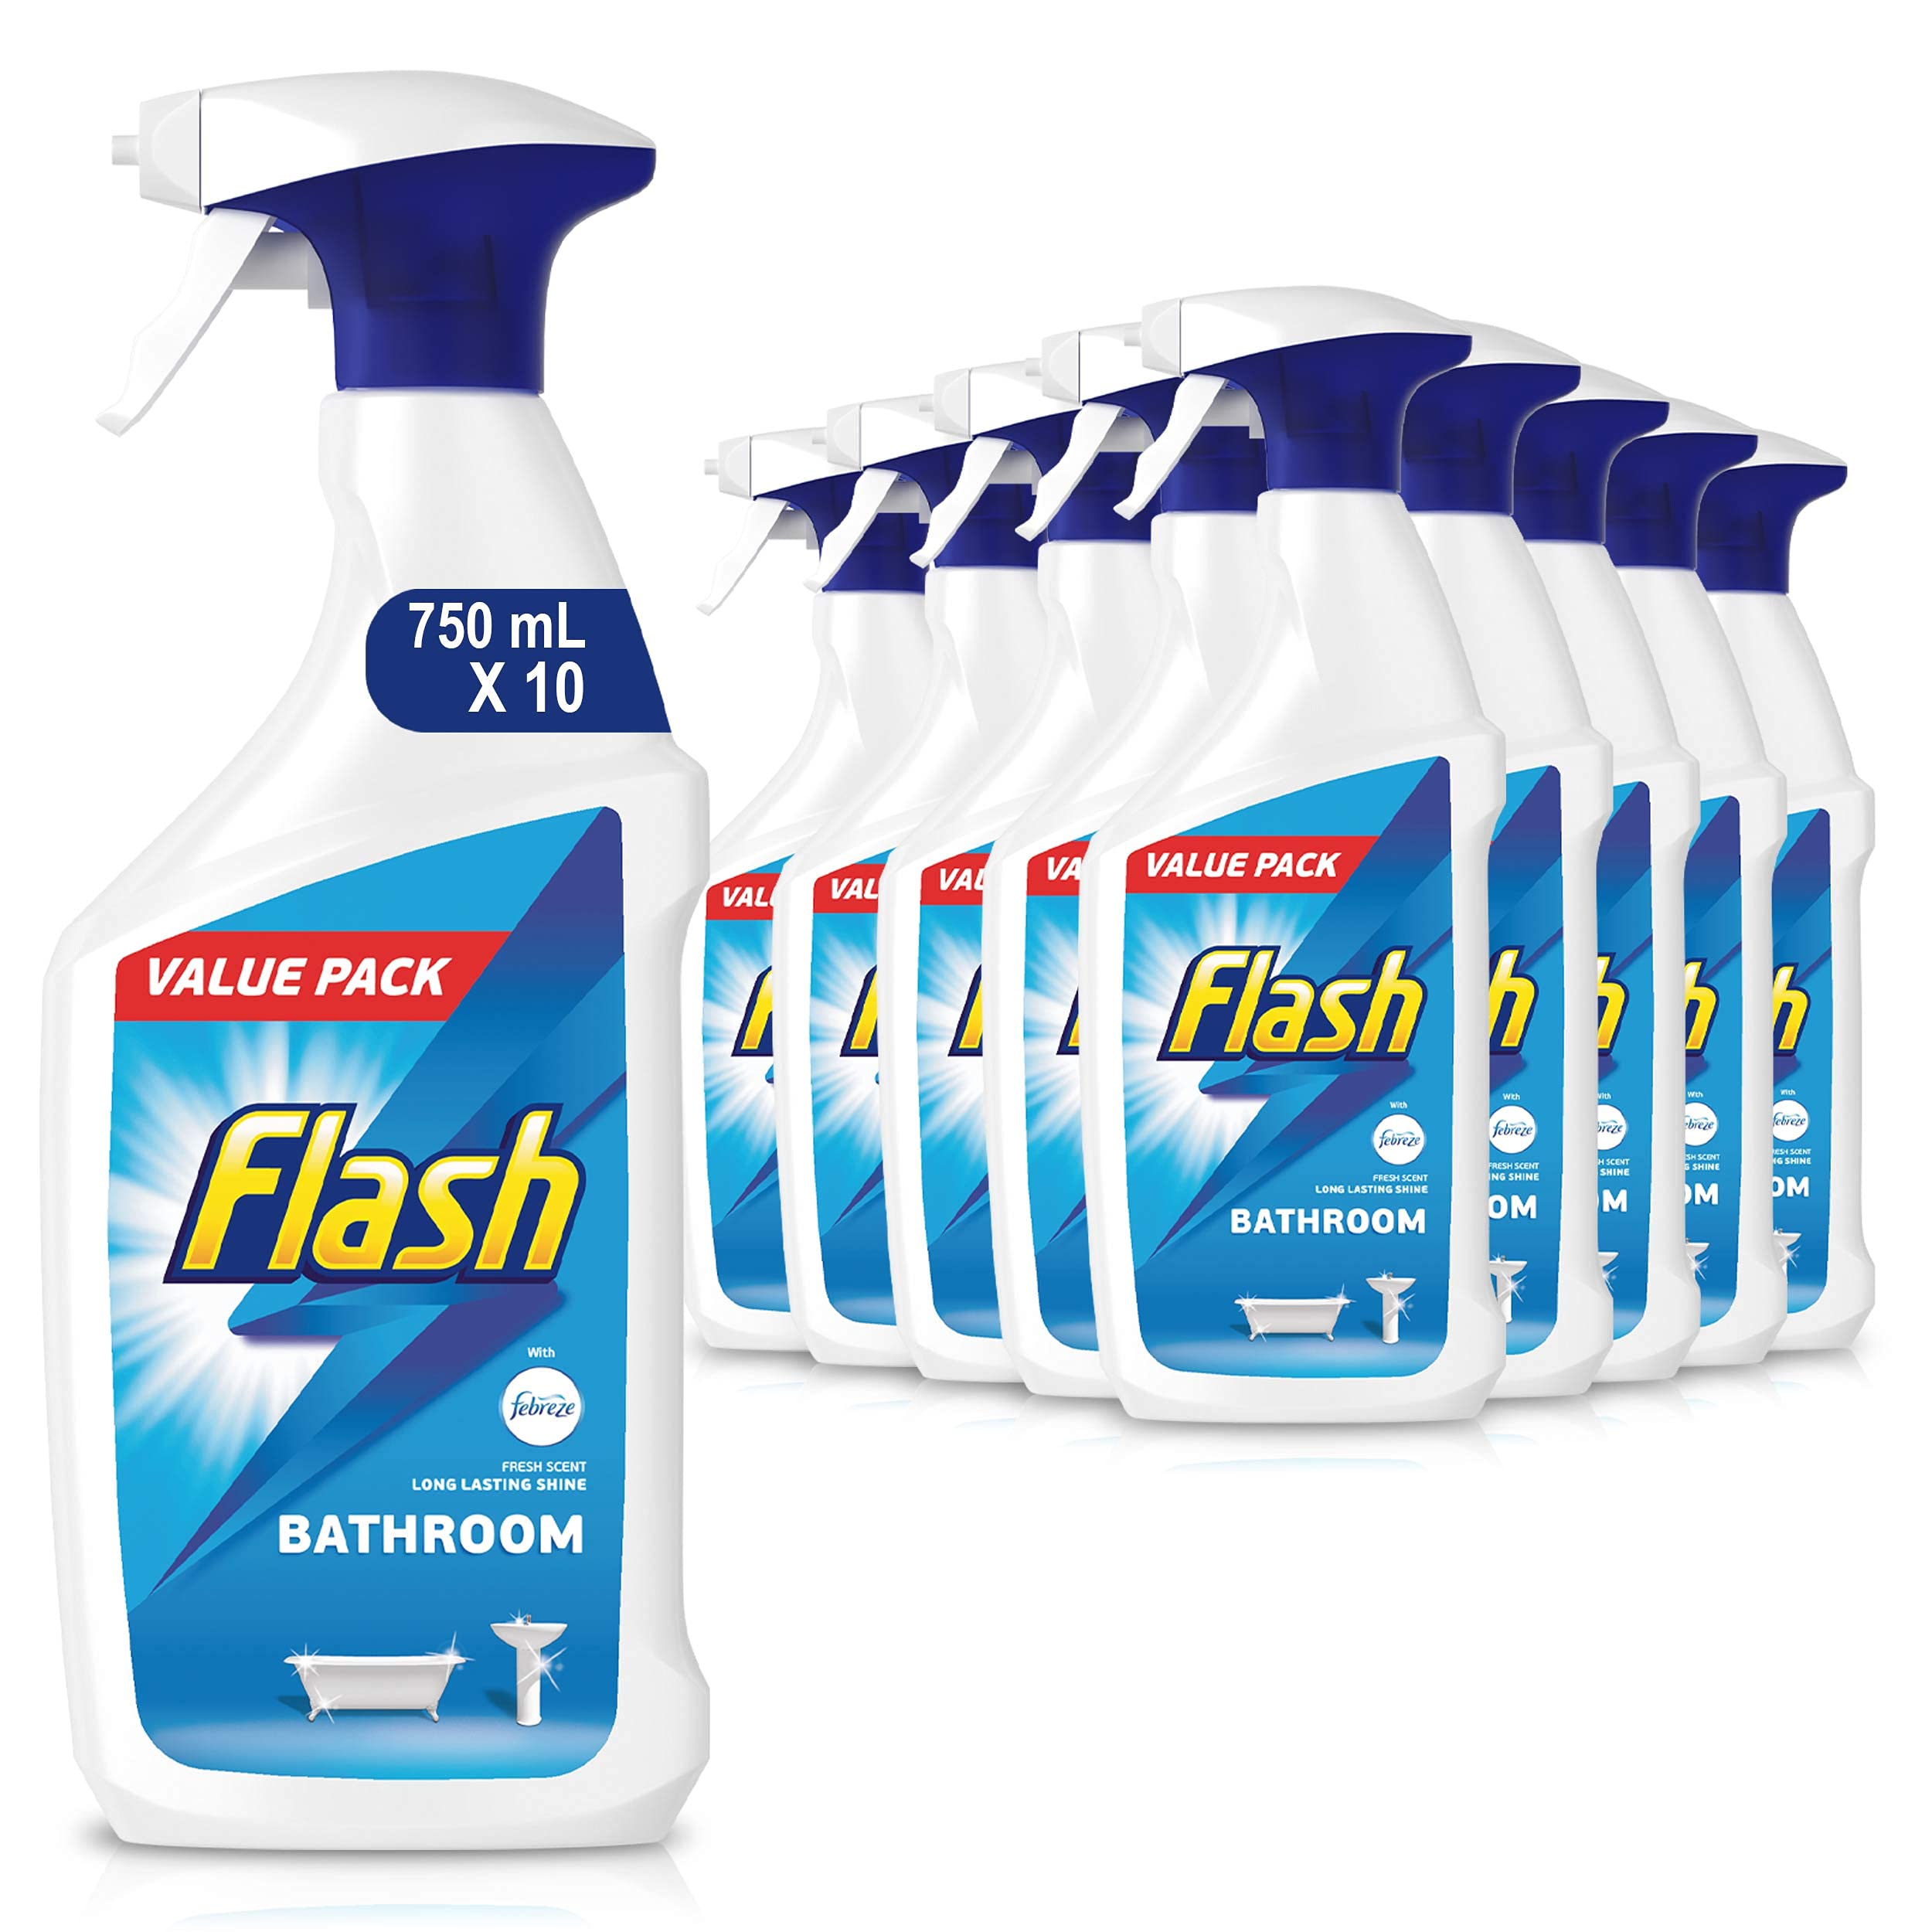 Flash Badezimmer-Reinigungsspray, 750 ml, 10 Stück (Verpackung kann variieren)